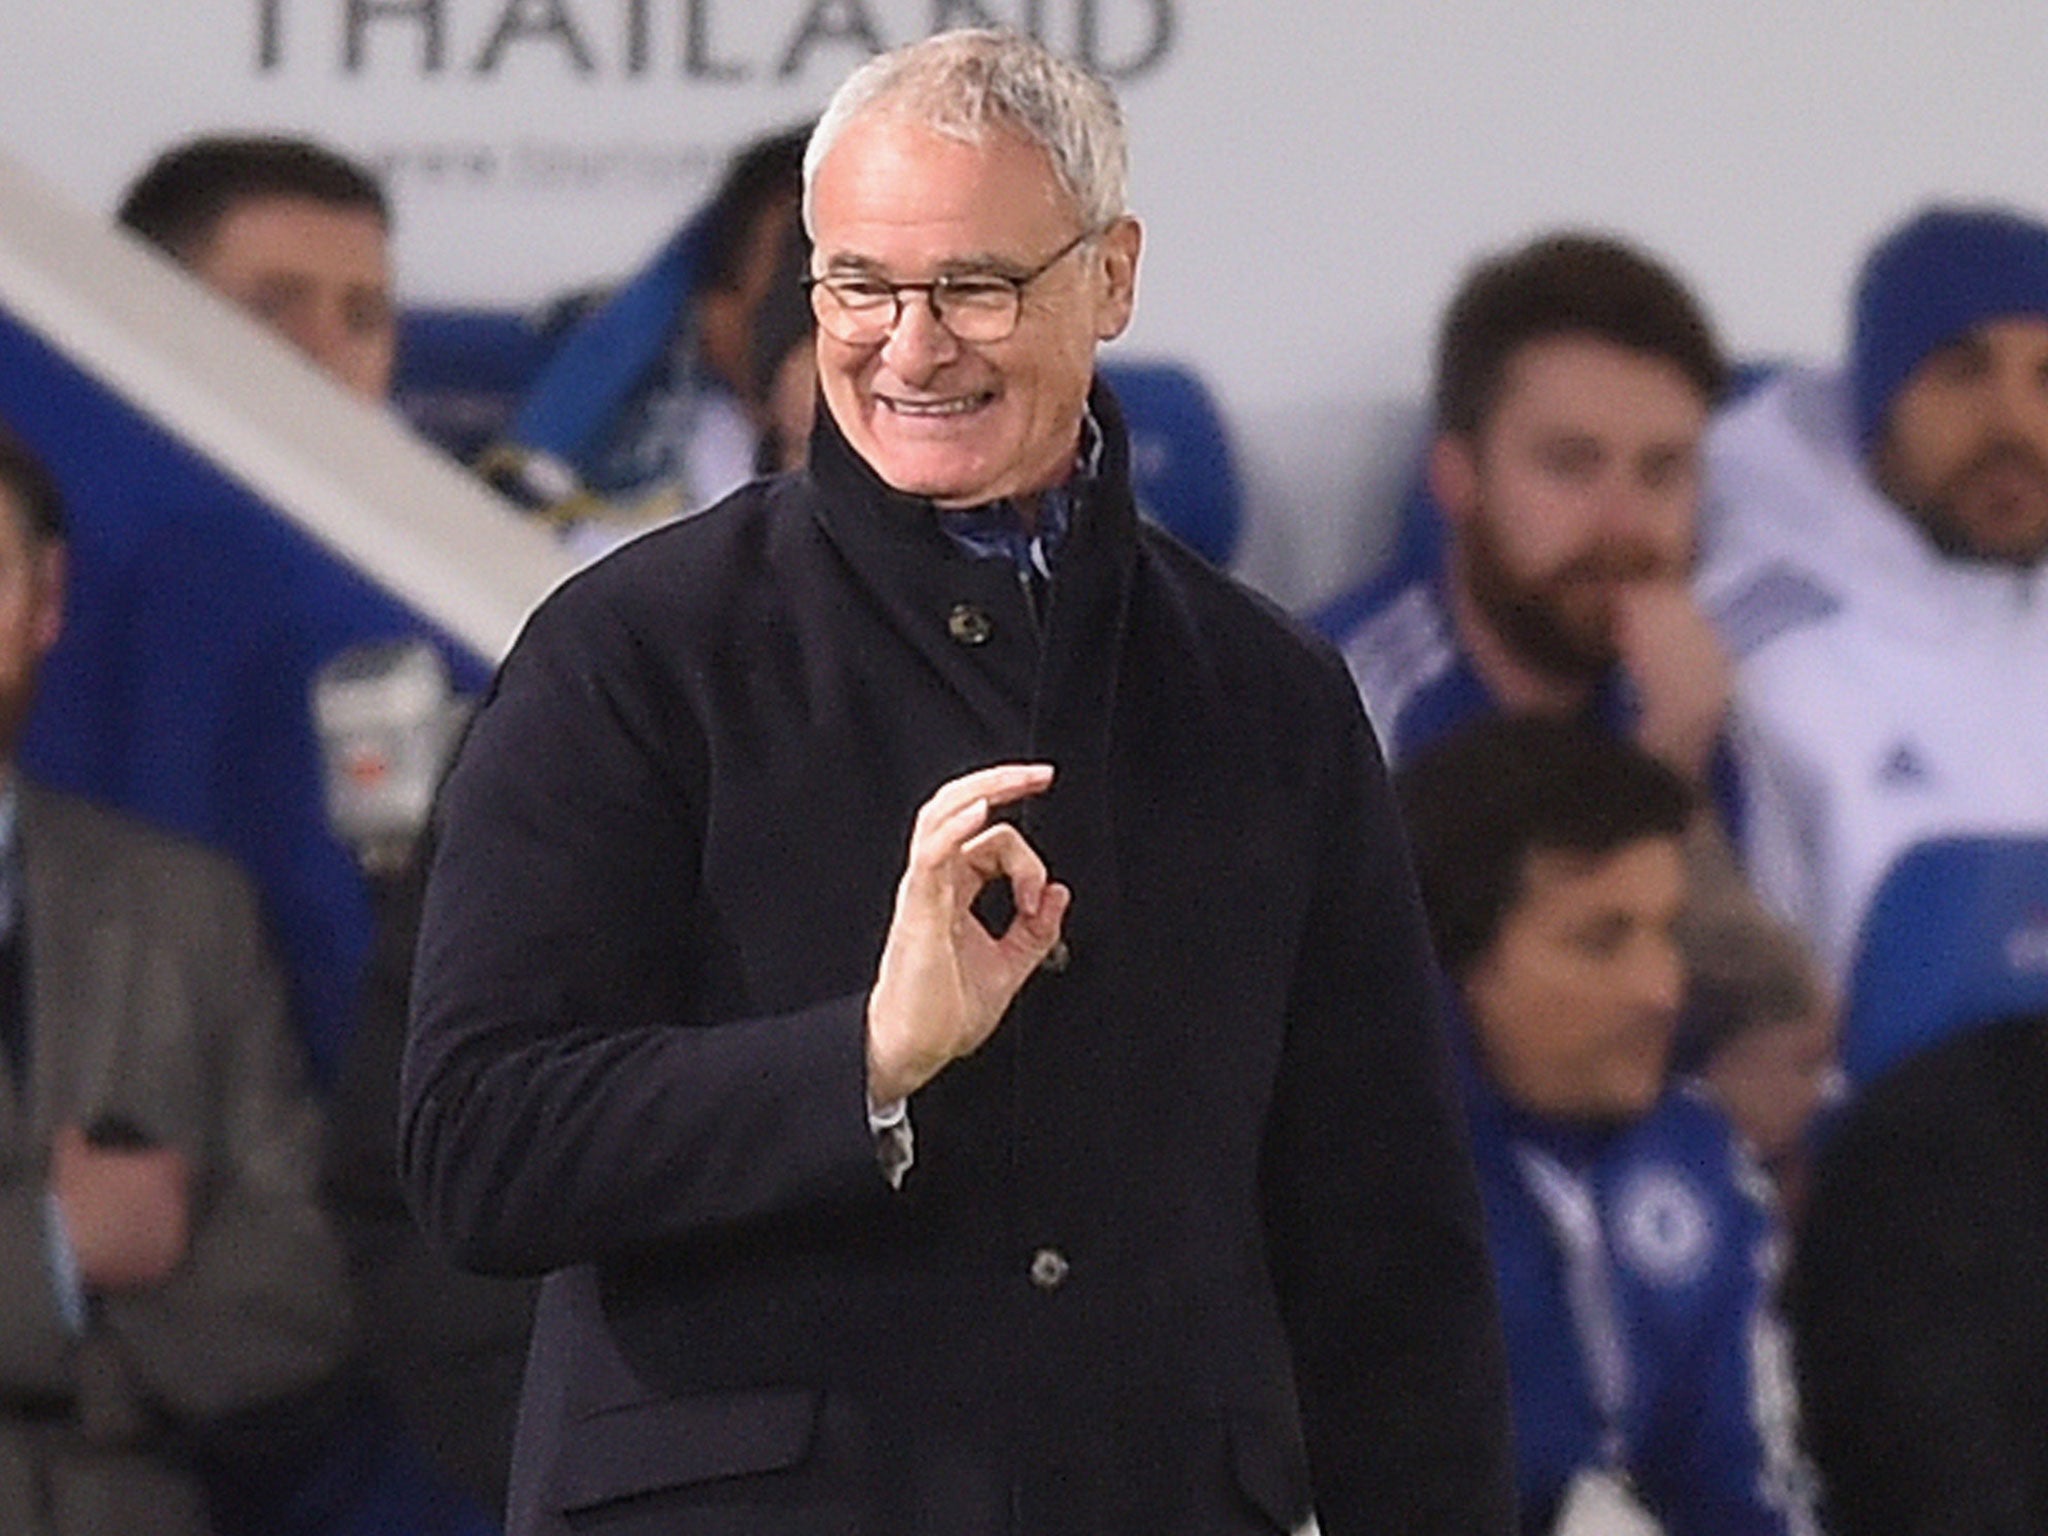 Leicester manager Claudio Ranieri gestures